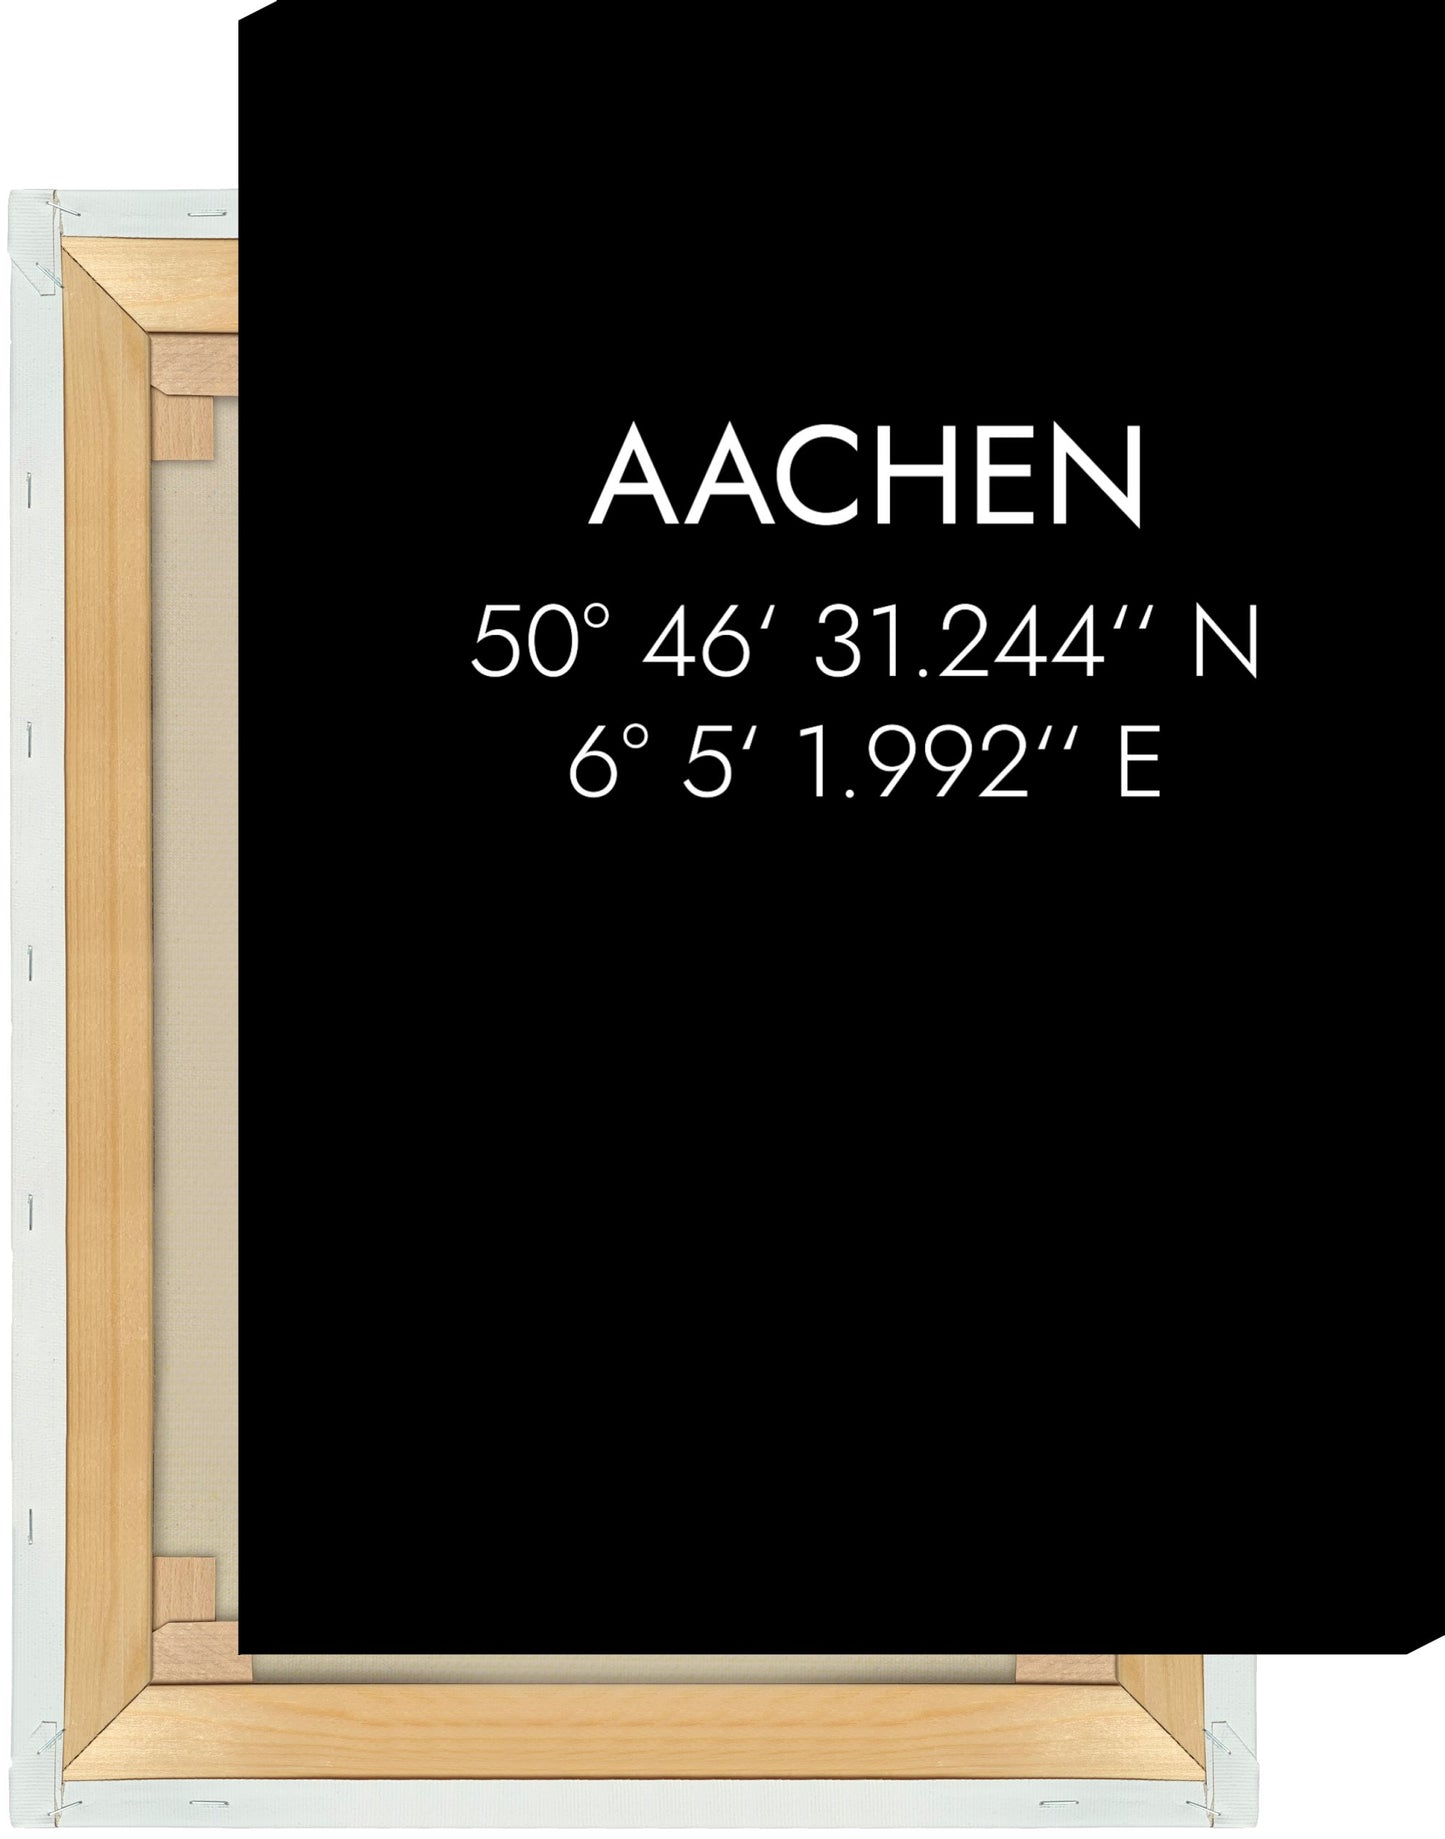 Leinwand Aachen Koordinaten #1